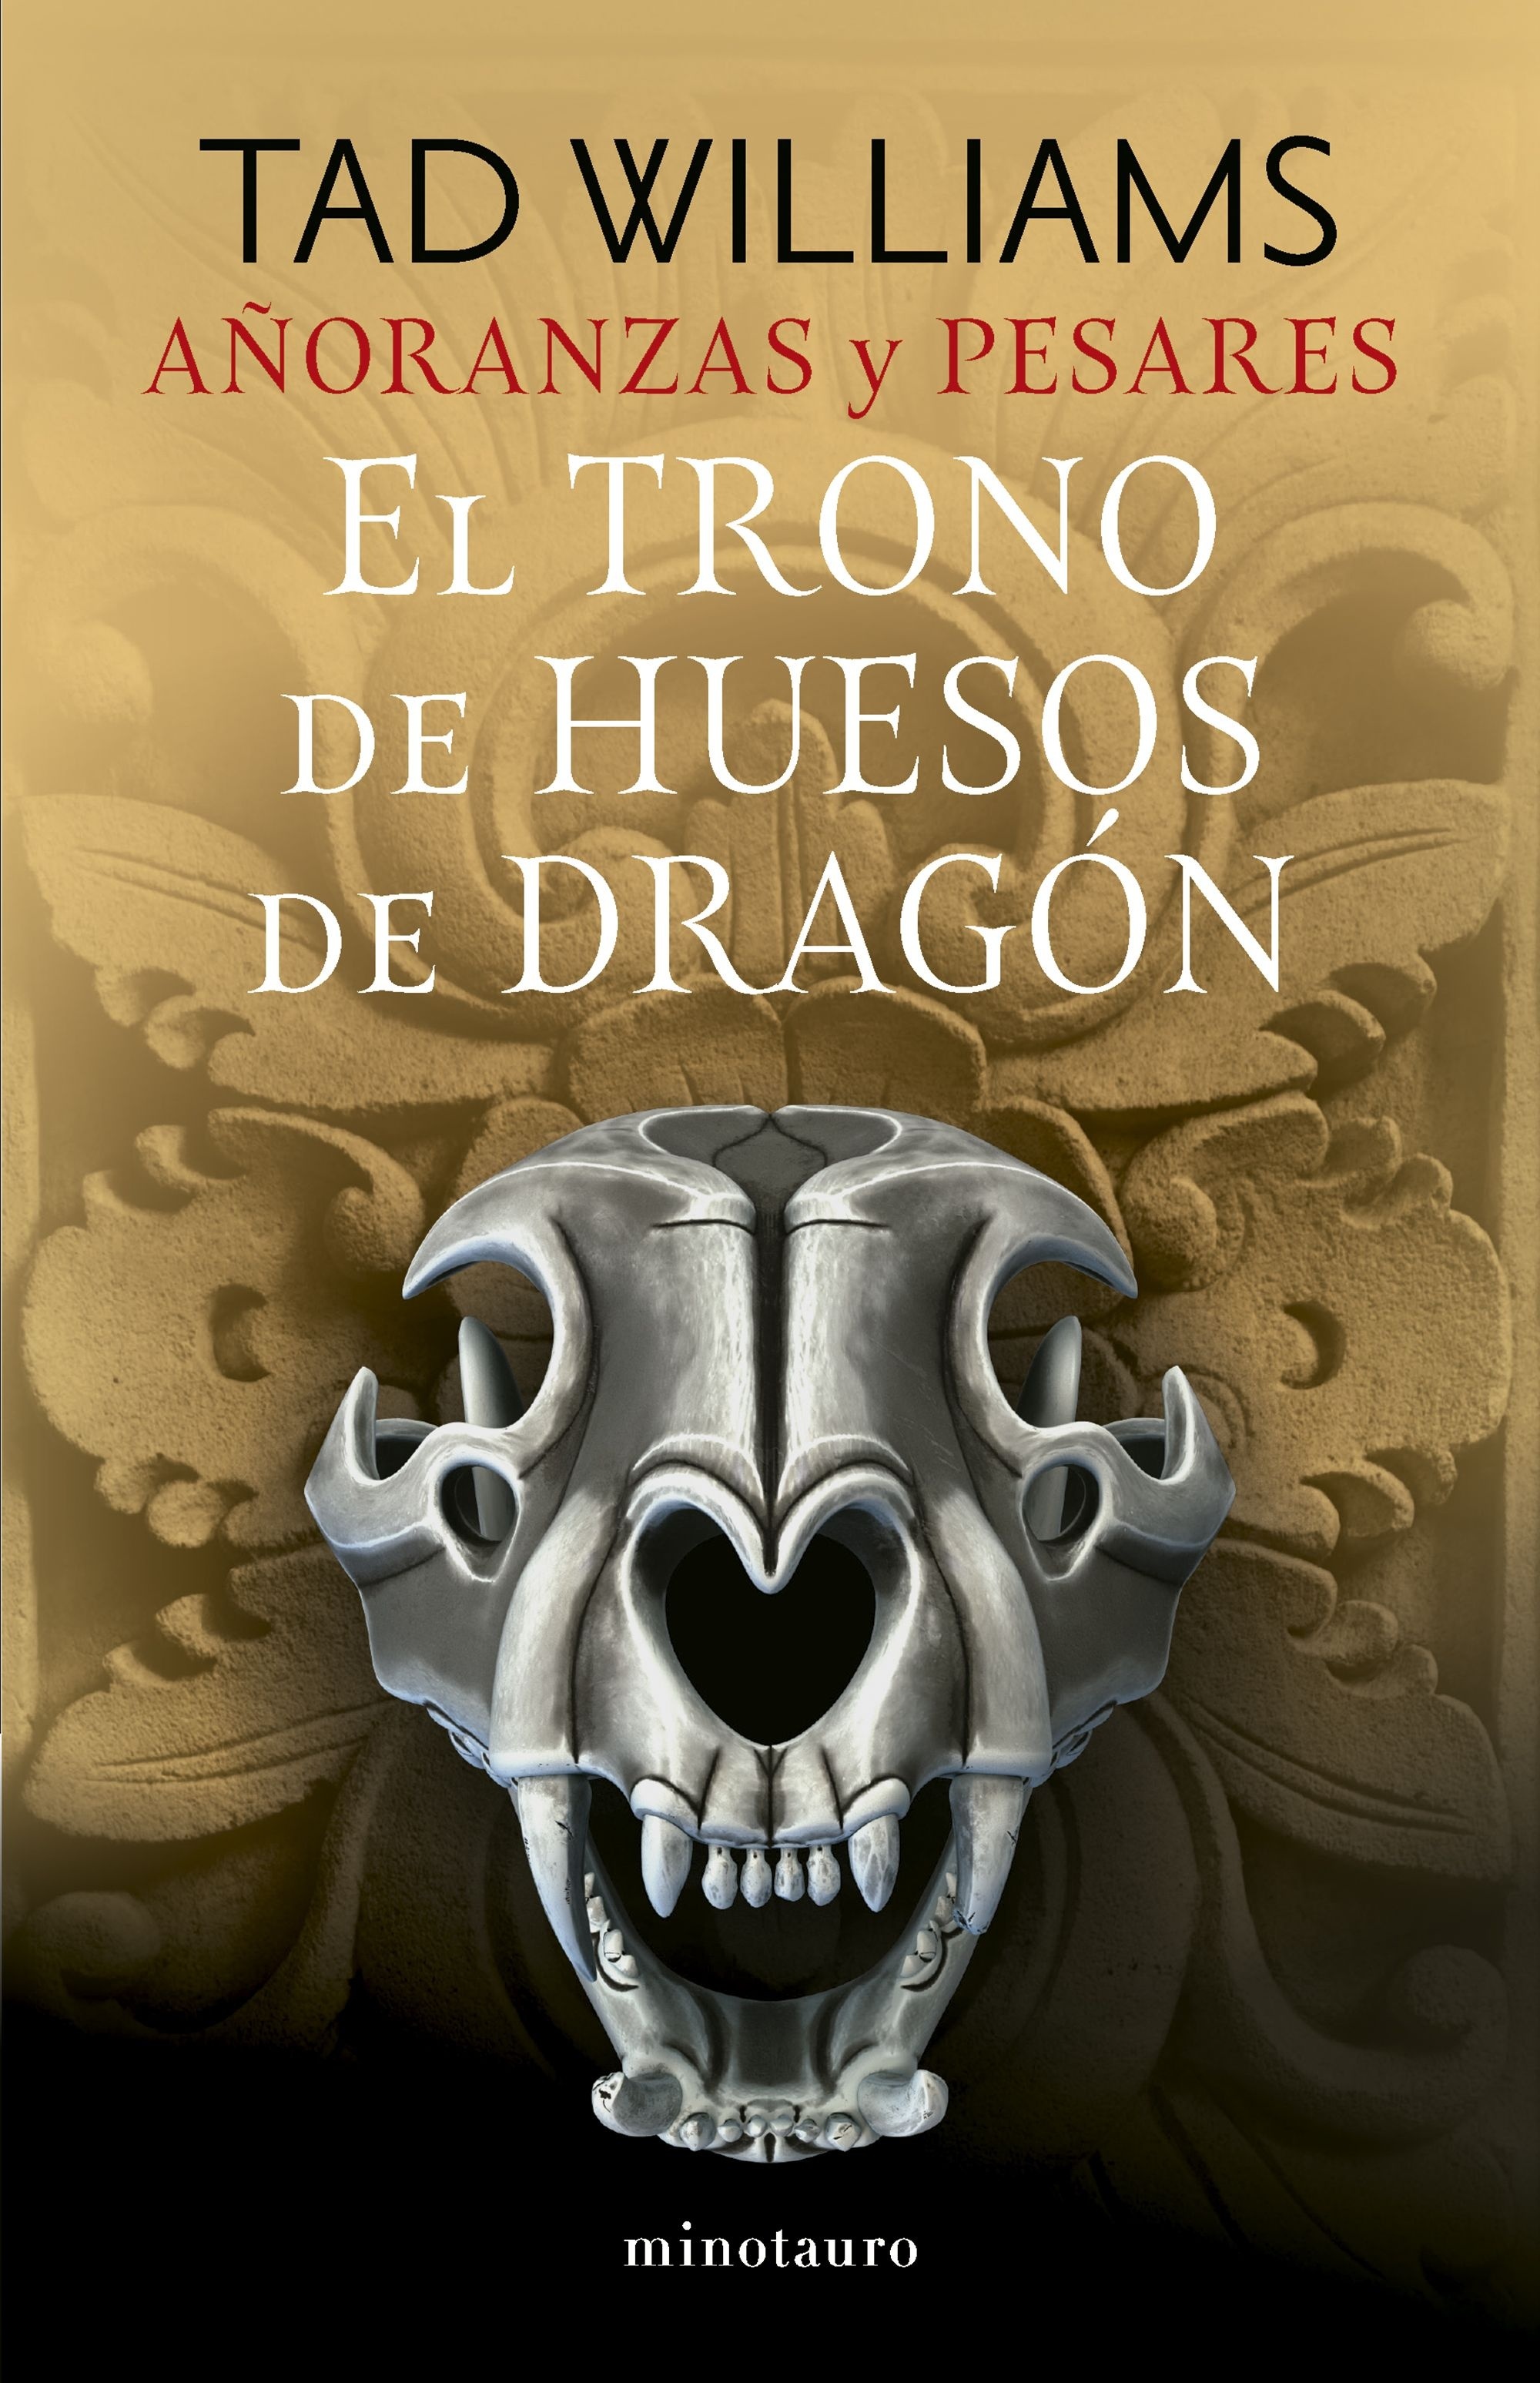 Añoranzas y pesares 1. El trono de huesos de dragón. 